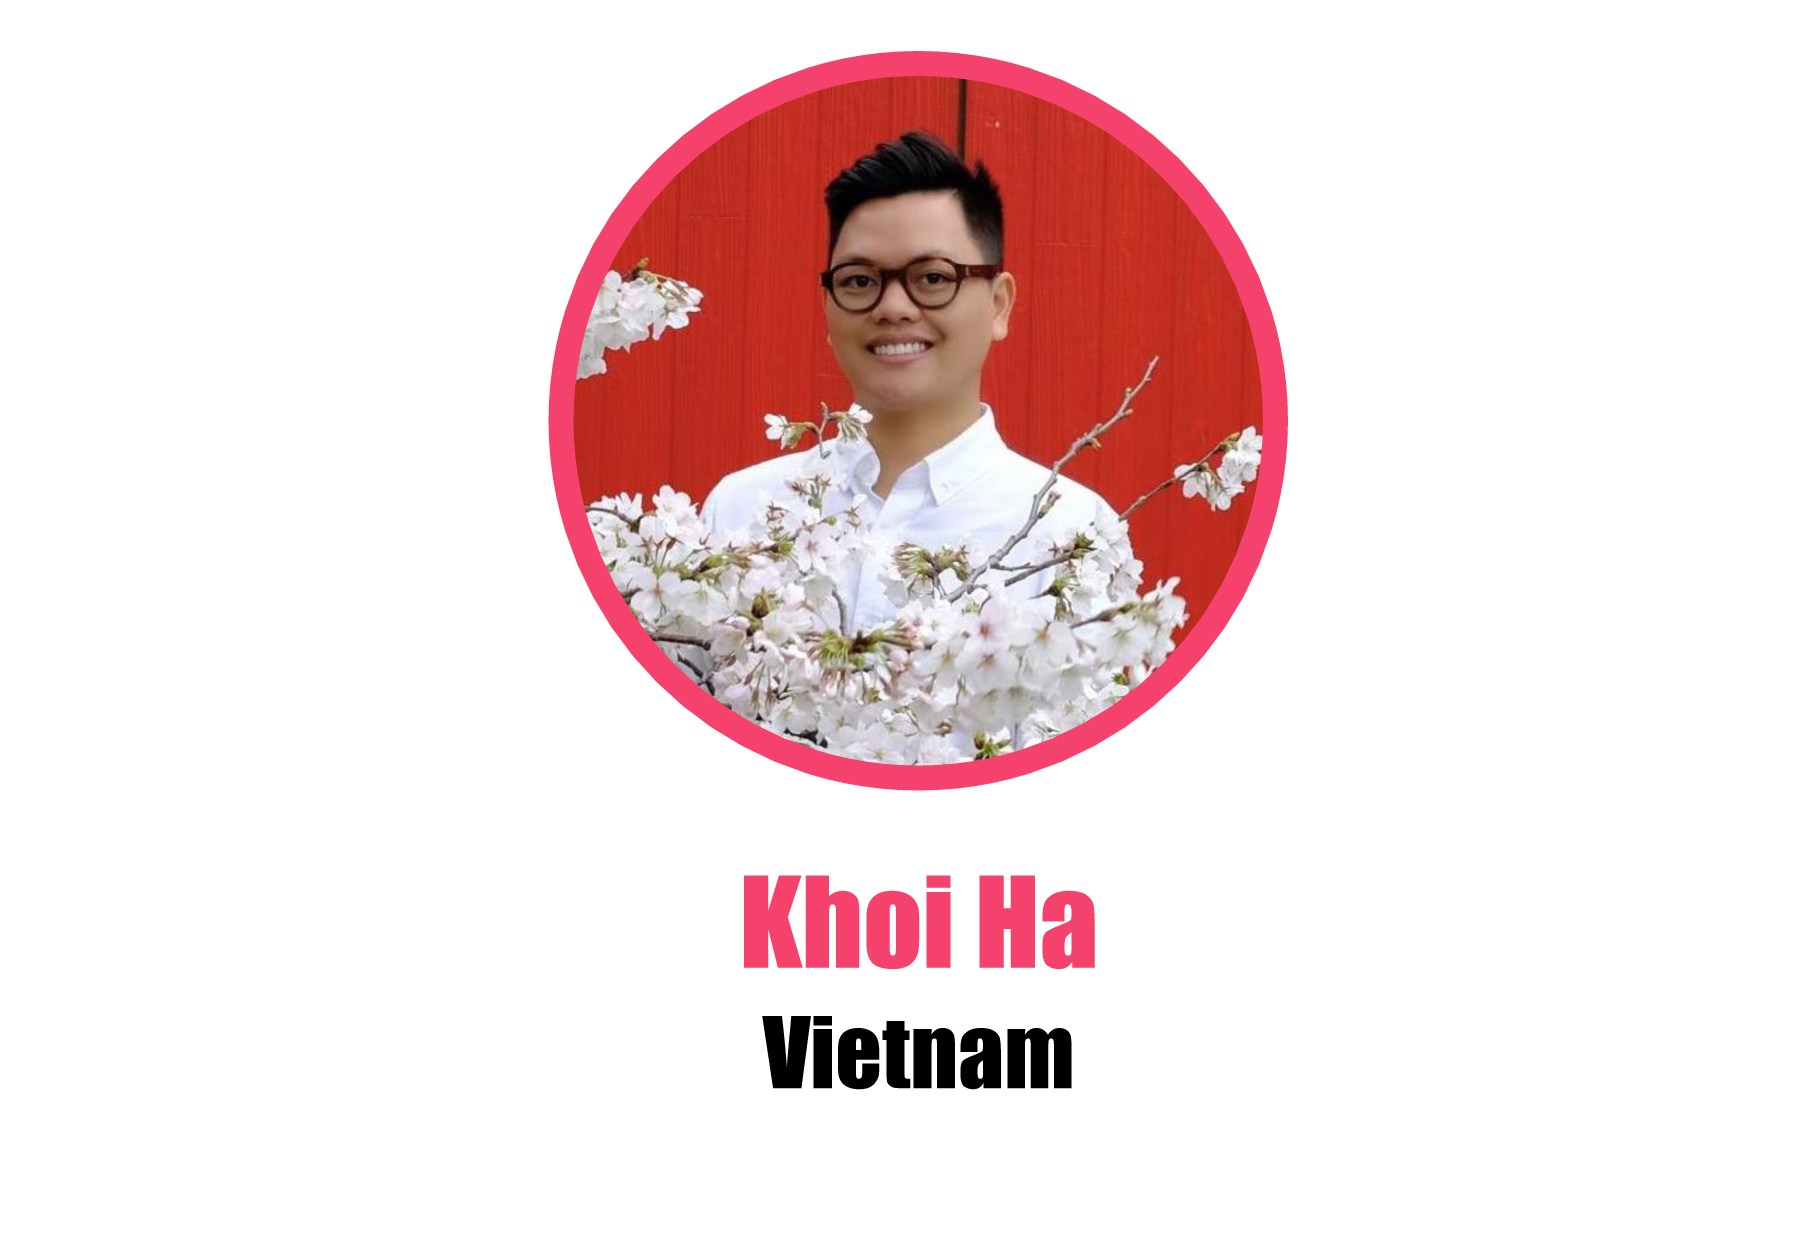 Vietnam_Khoi Ha